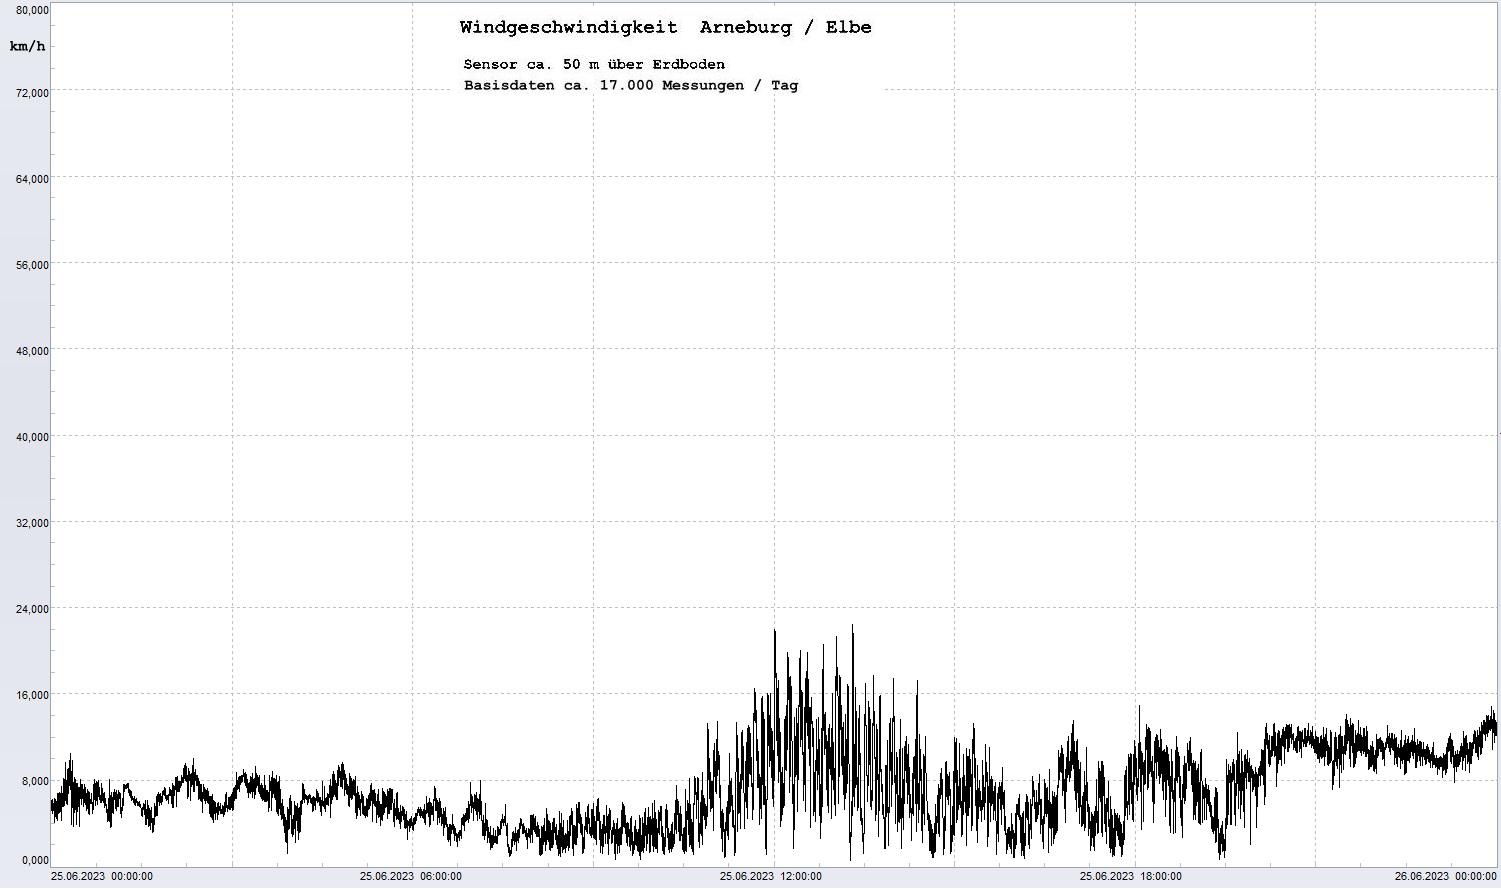 Arneburg Tages-Diagramm Winddaten, 25.06.2023
  Diagramm, Sensor auf Gebäude, ca. 50 m über Erdboden, Basis: 5s-Aufzeichnung